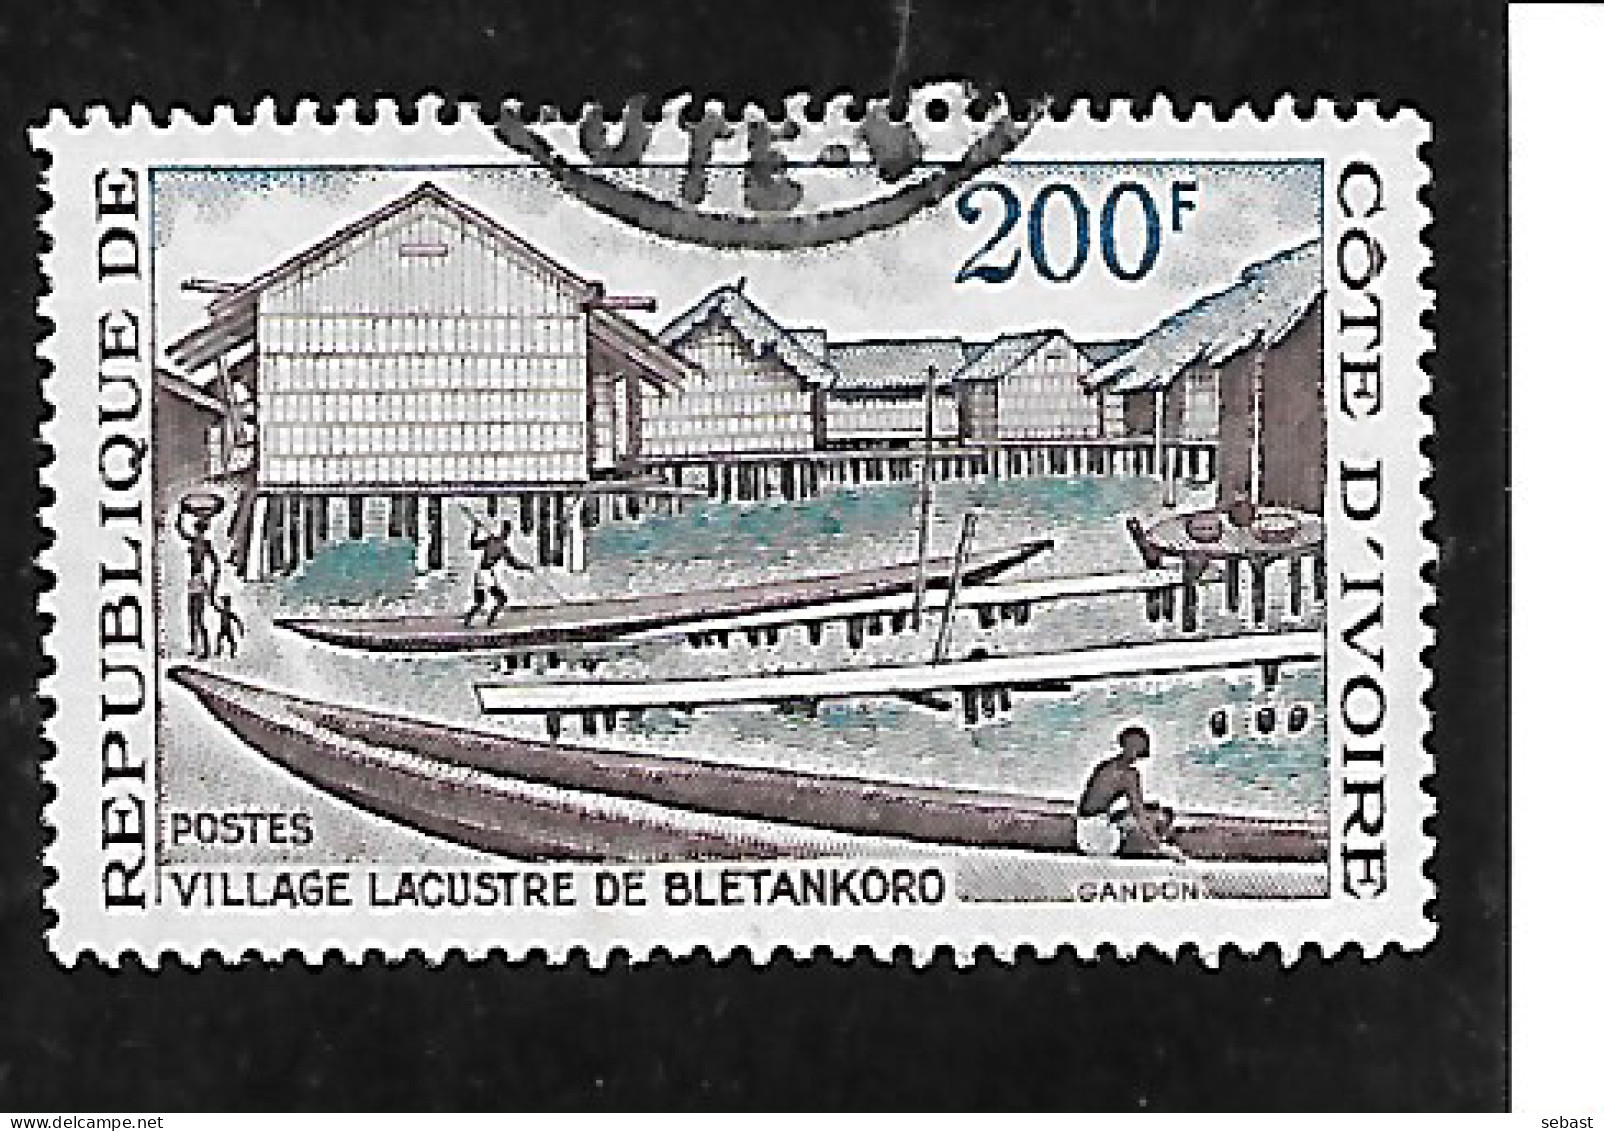 TIMBRE OBLITERE DE COTE D'VOIRE DE 1973 N°MICHEL 423 - Côte D'Ivoire (1960-...)